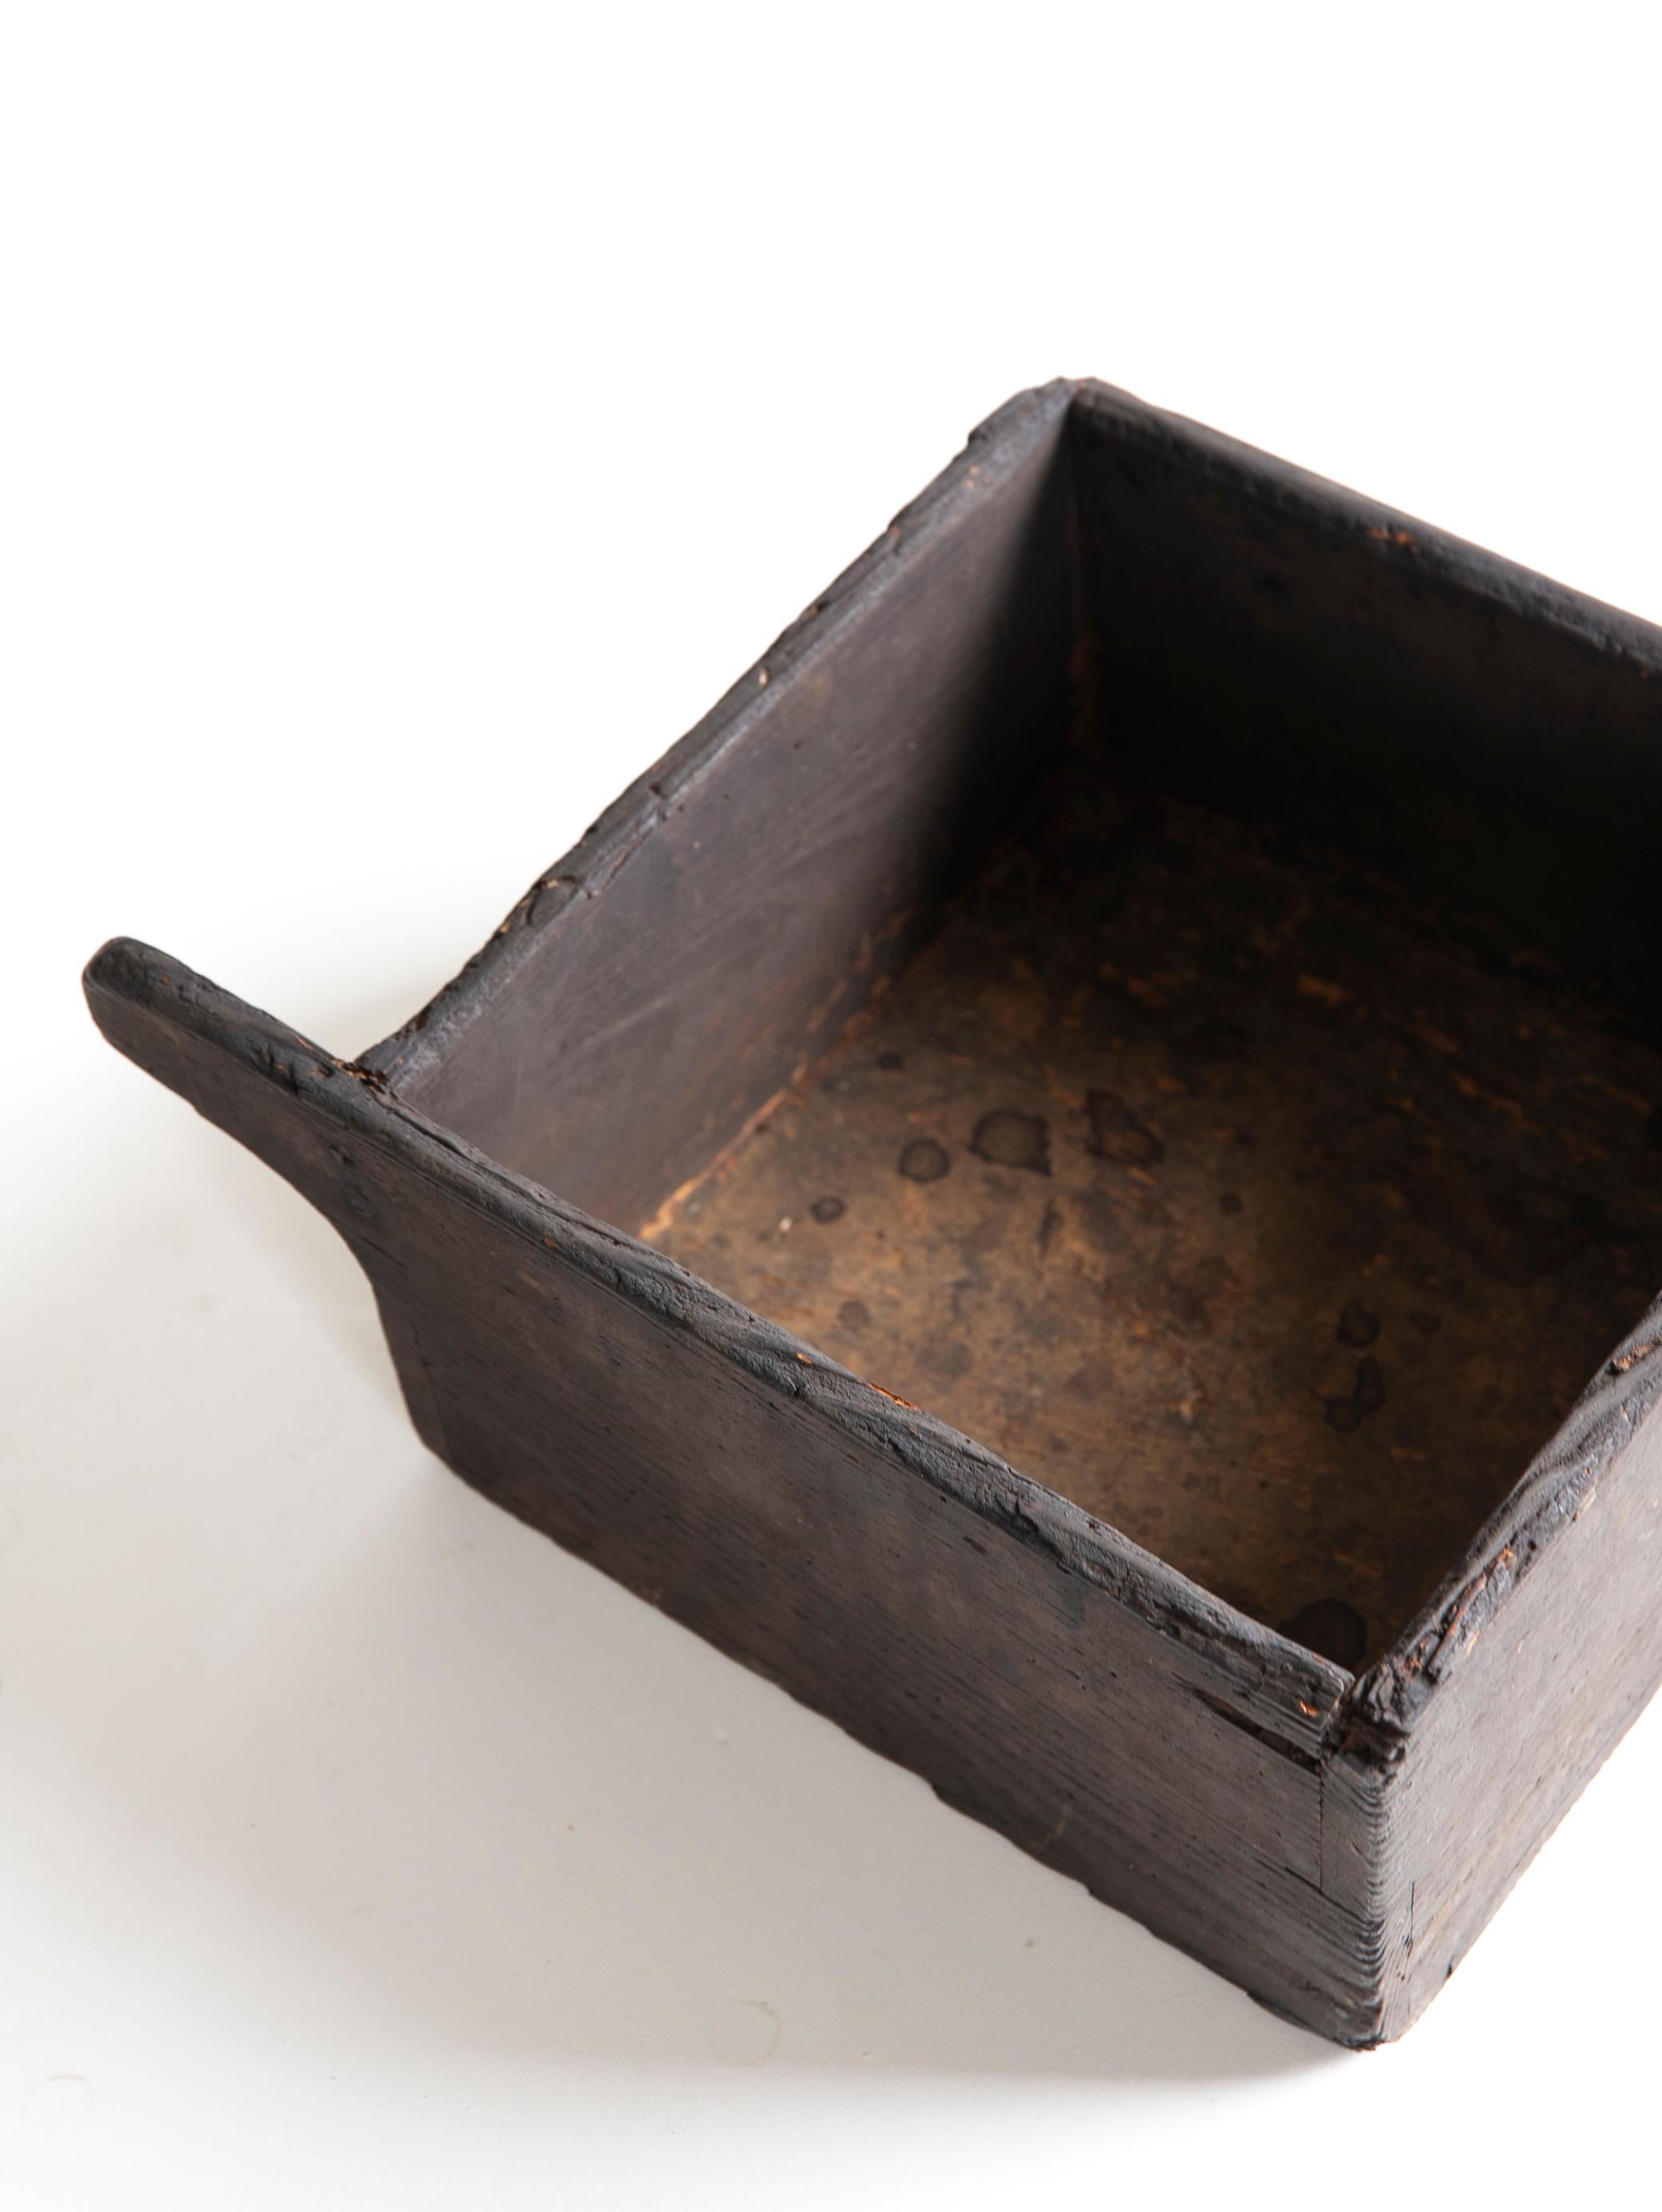 Japanese Antique Wooden Bowl 1860s-1900s/Mingei Wabisabi Primitive Object 2